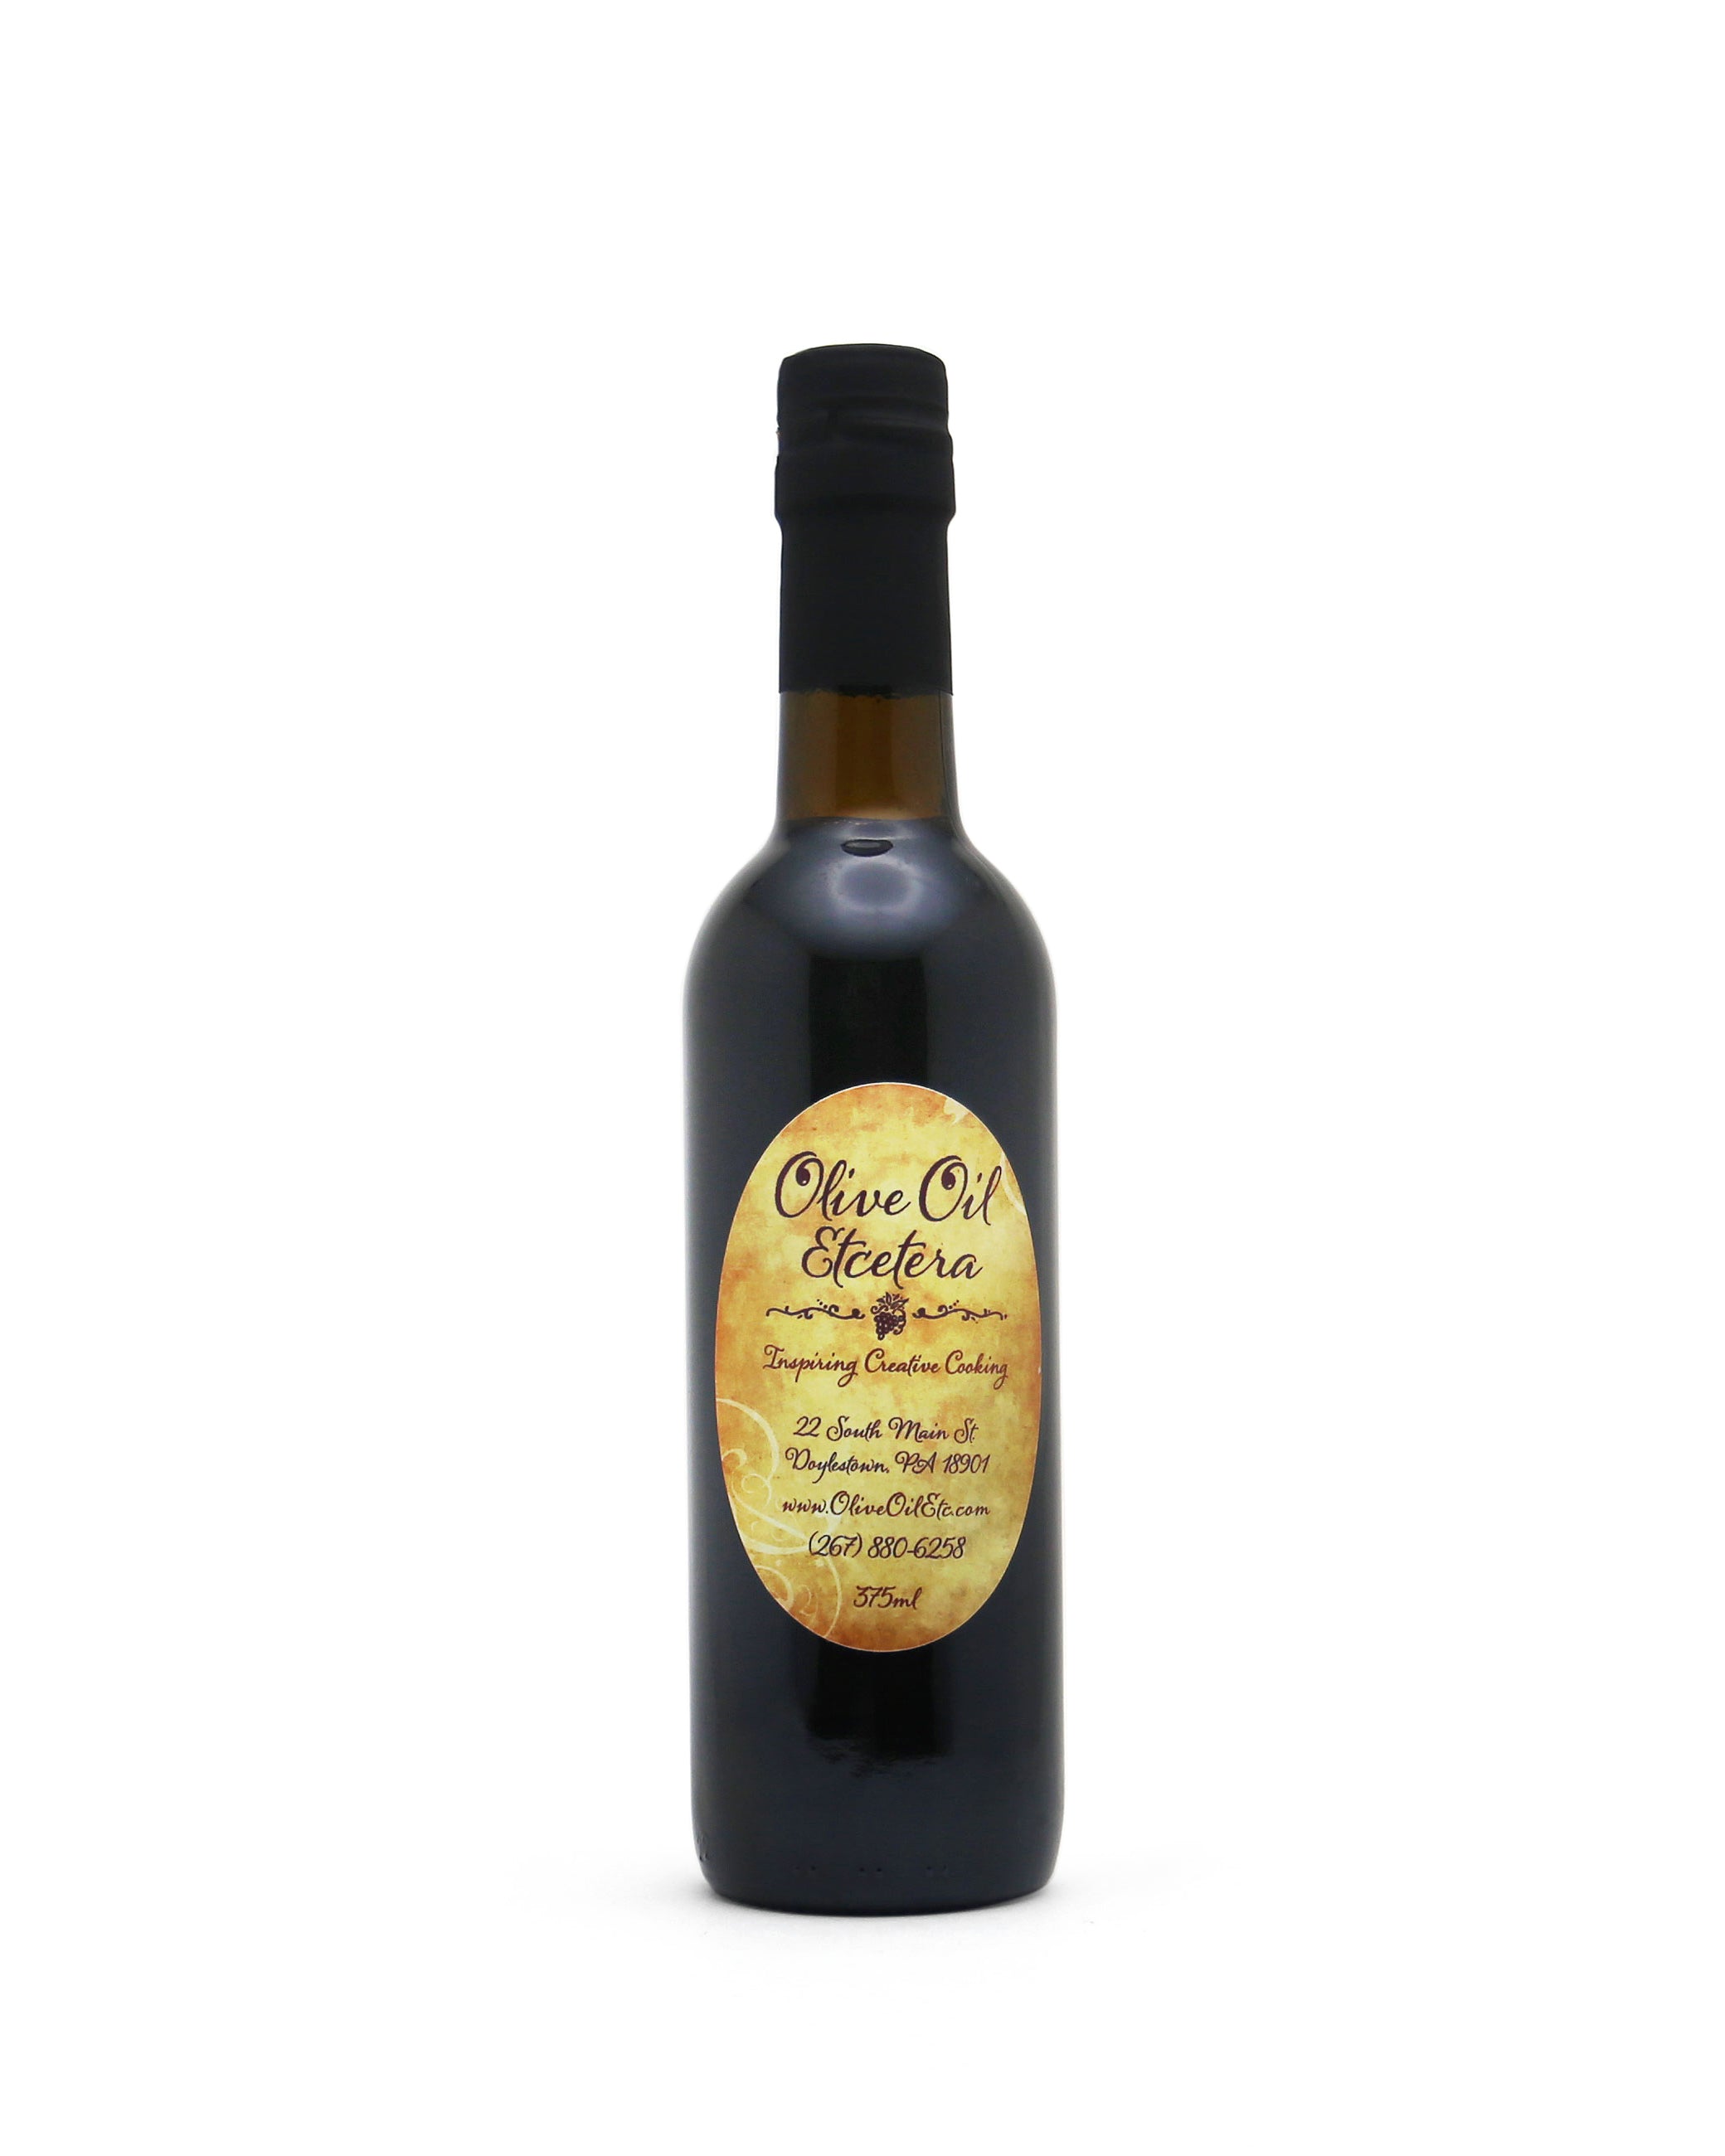 Lemon Zest Balsamic Vinegar - Olive Oil Etcetera - Bucks county's gourmet olive oil and vinegar shop